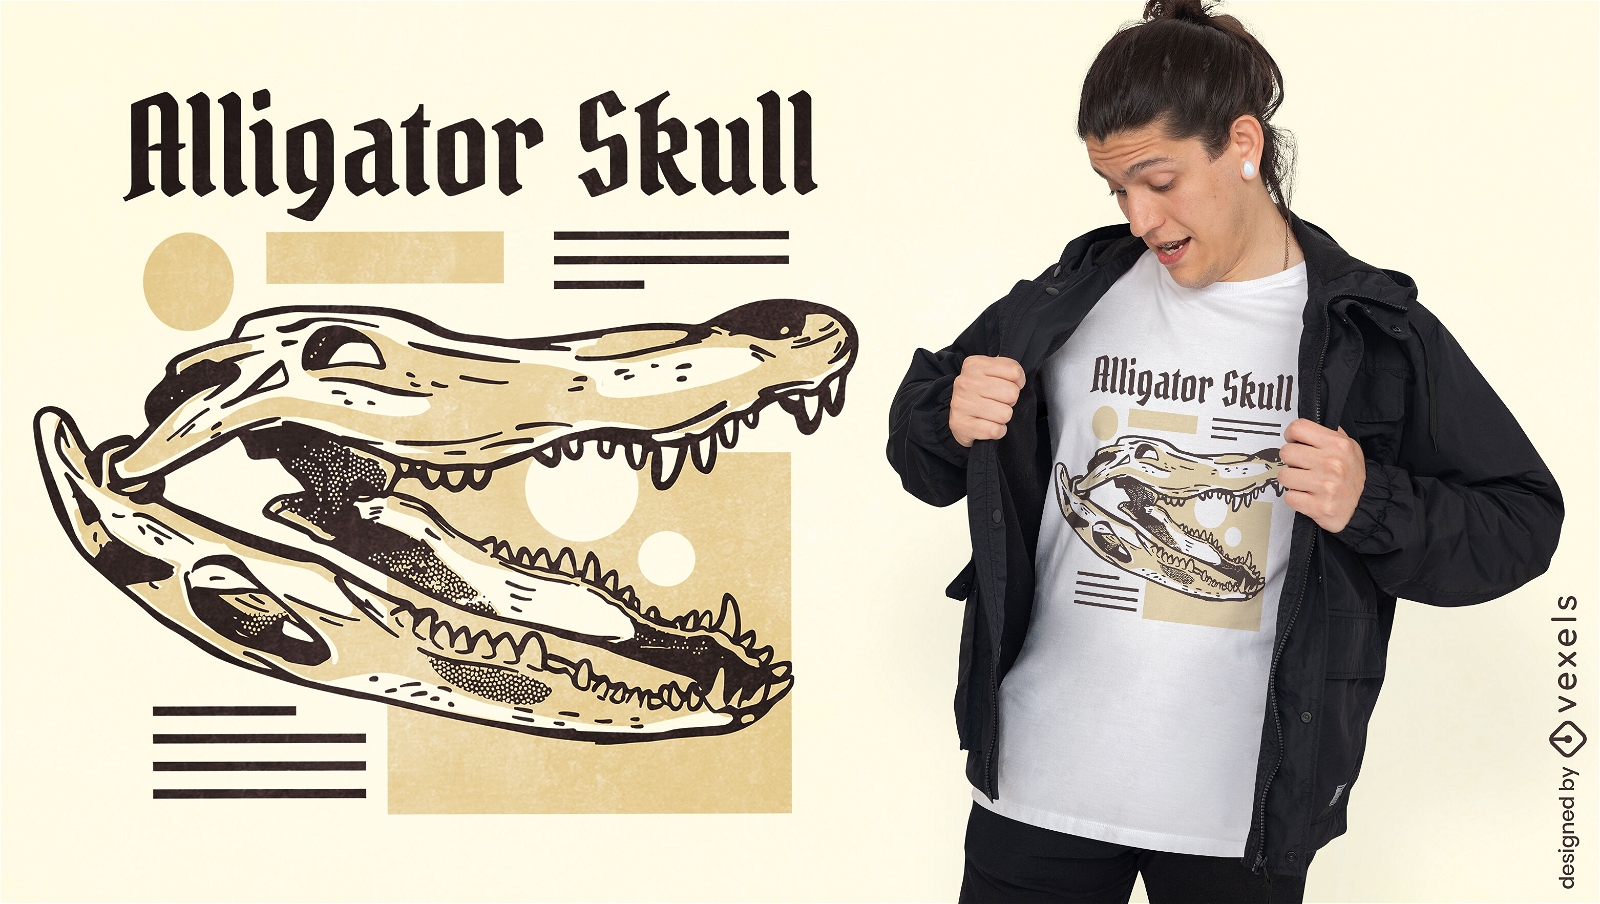 Alligator-Tiersch?del-T-Shirt-Design